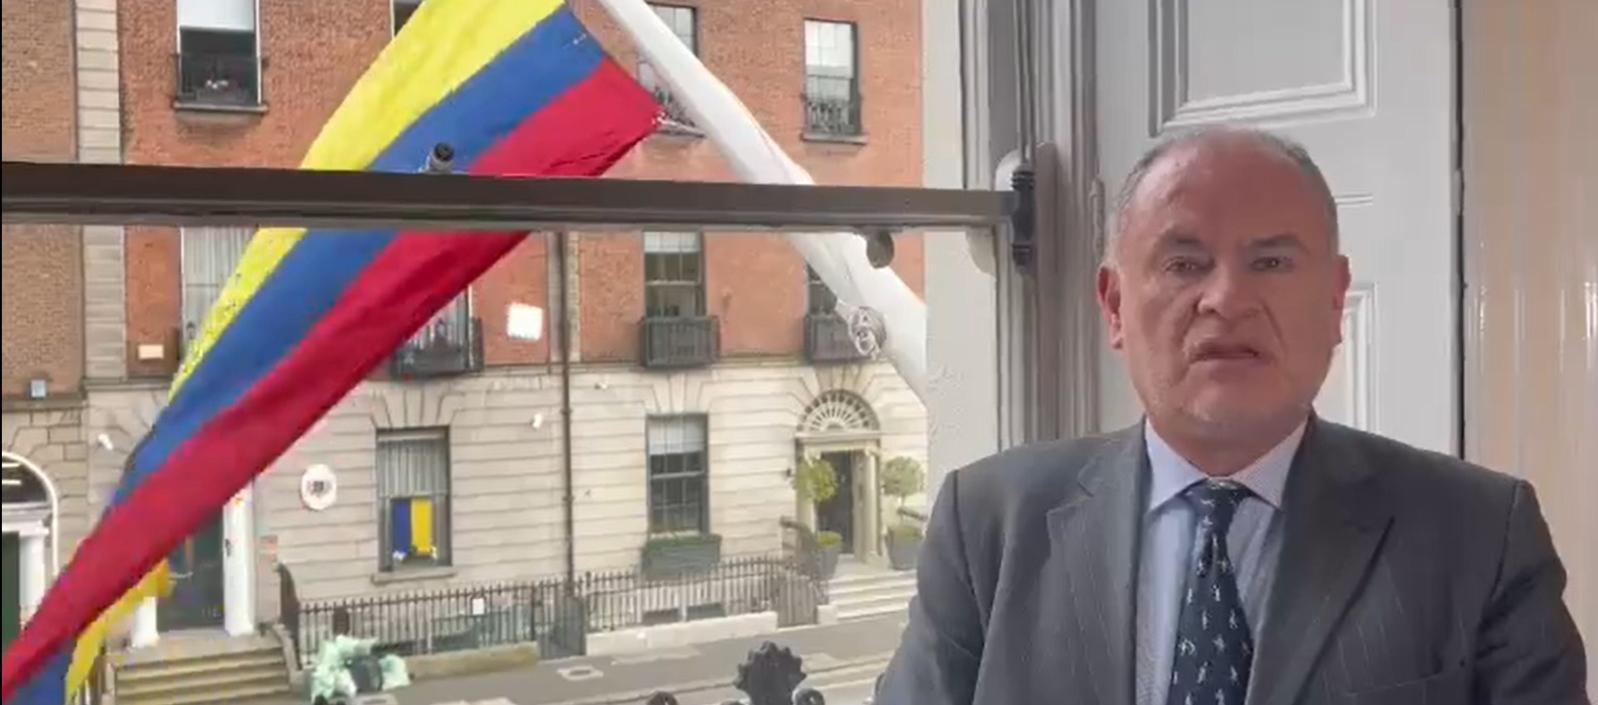 El embajador de Colombia en Irlanda, Camilo Ruiz